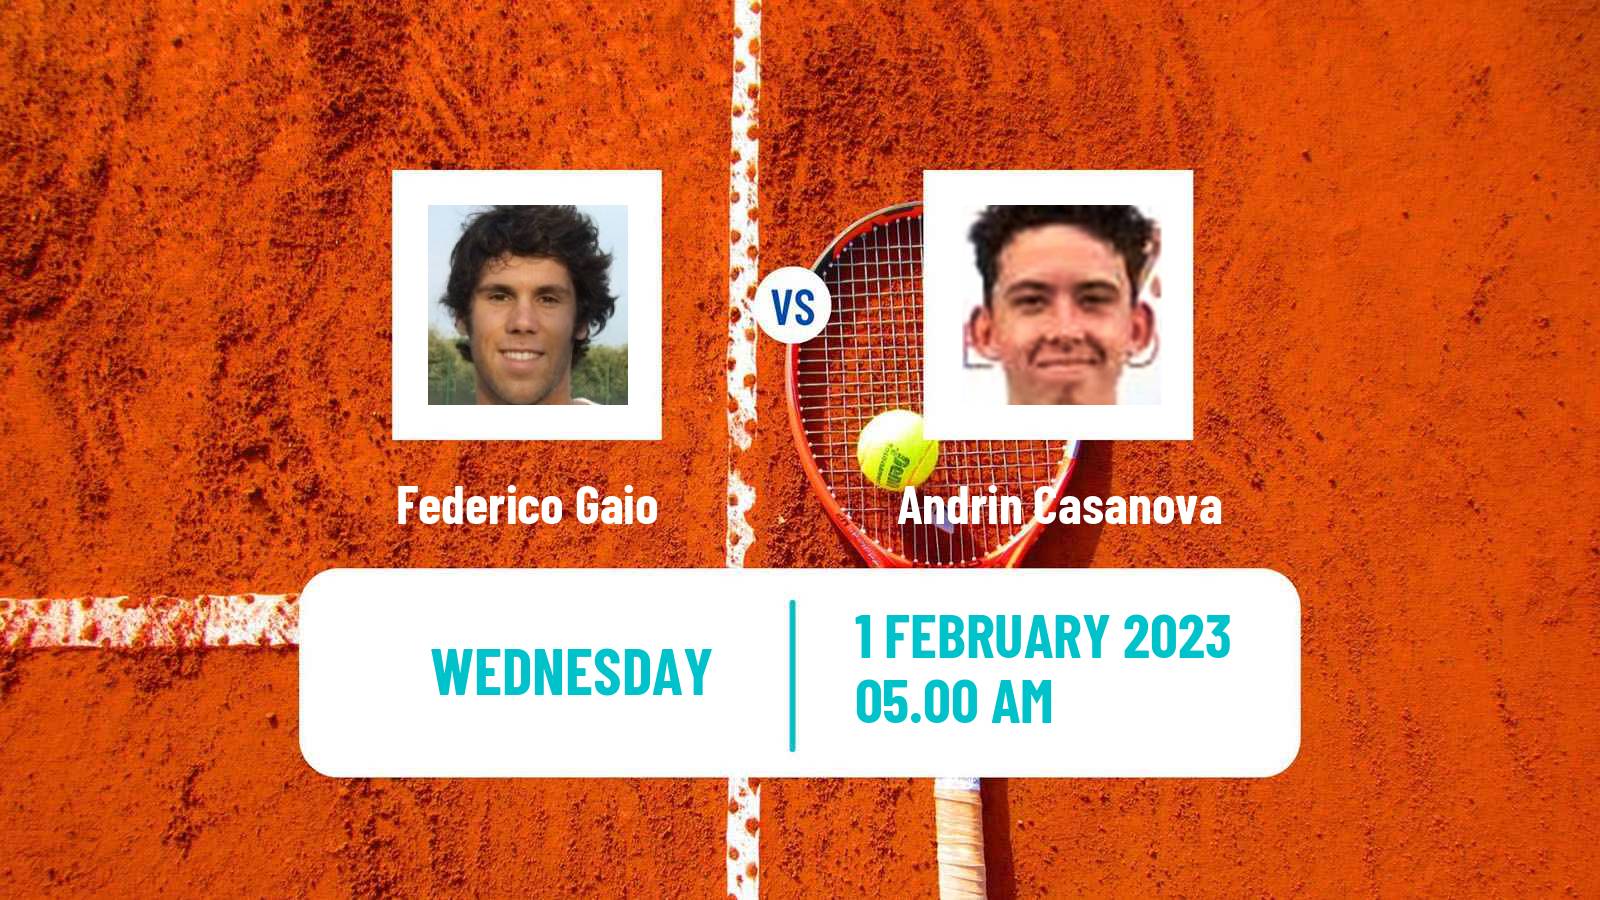 Tennis ITF Tournaments Federico Gaio - Andrin Casanova